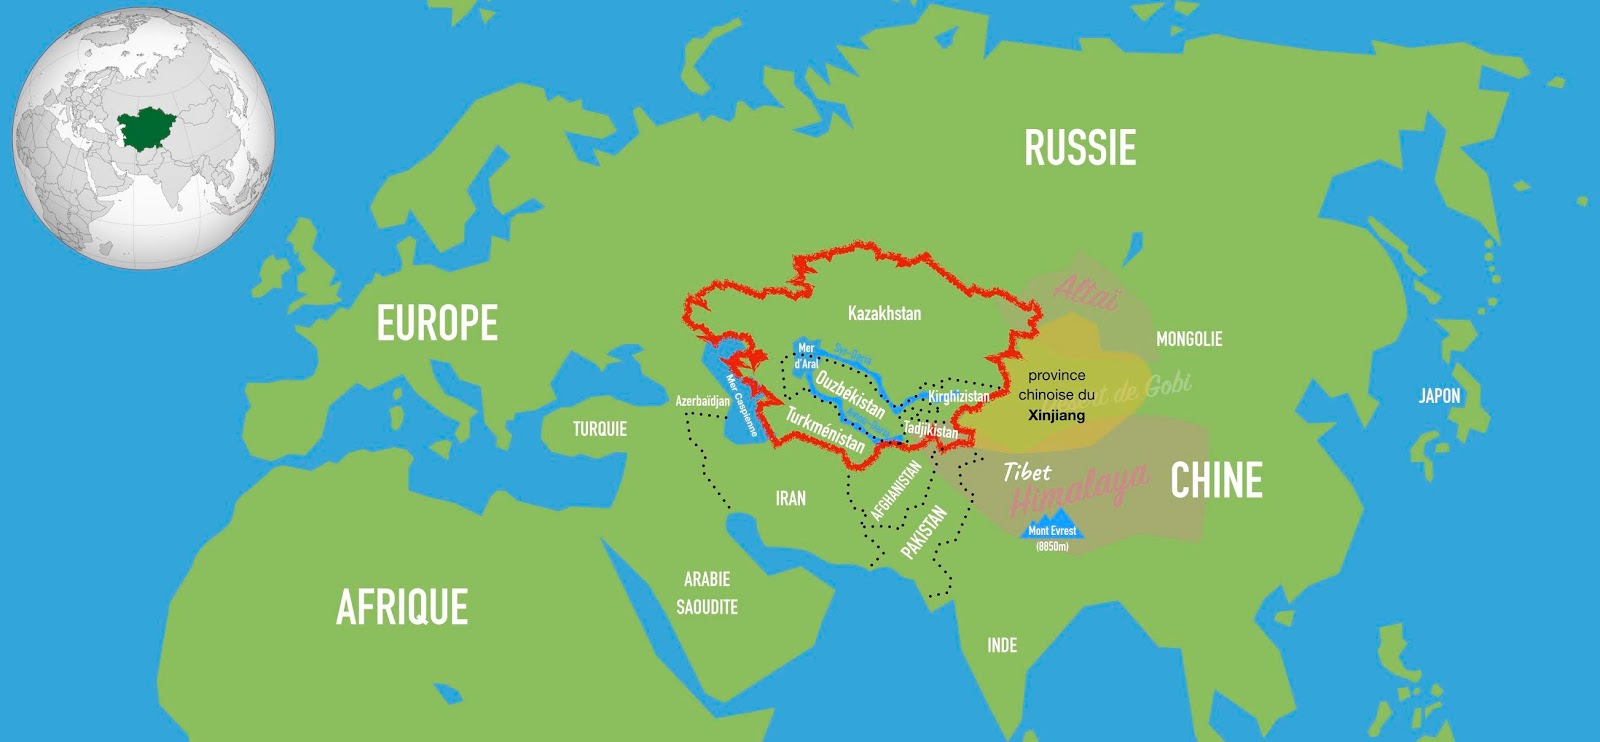 Le Kazakhstan en Asie centrale et Eurasie.